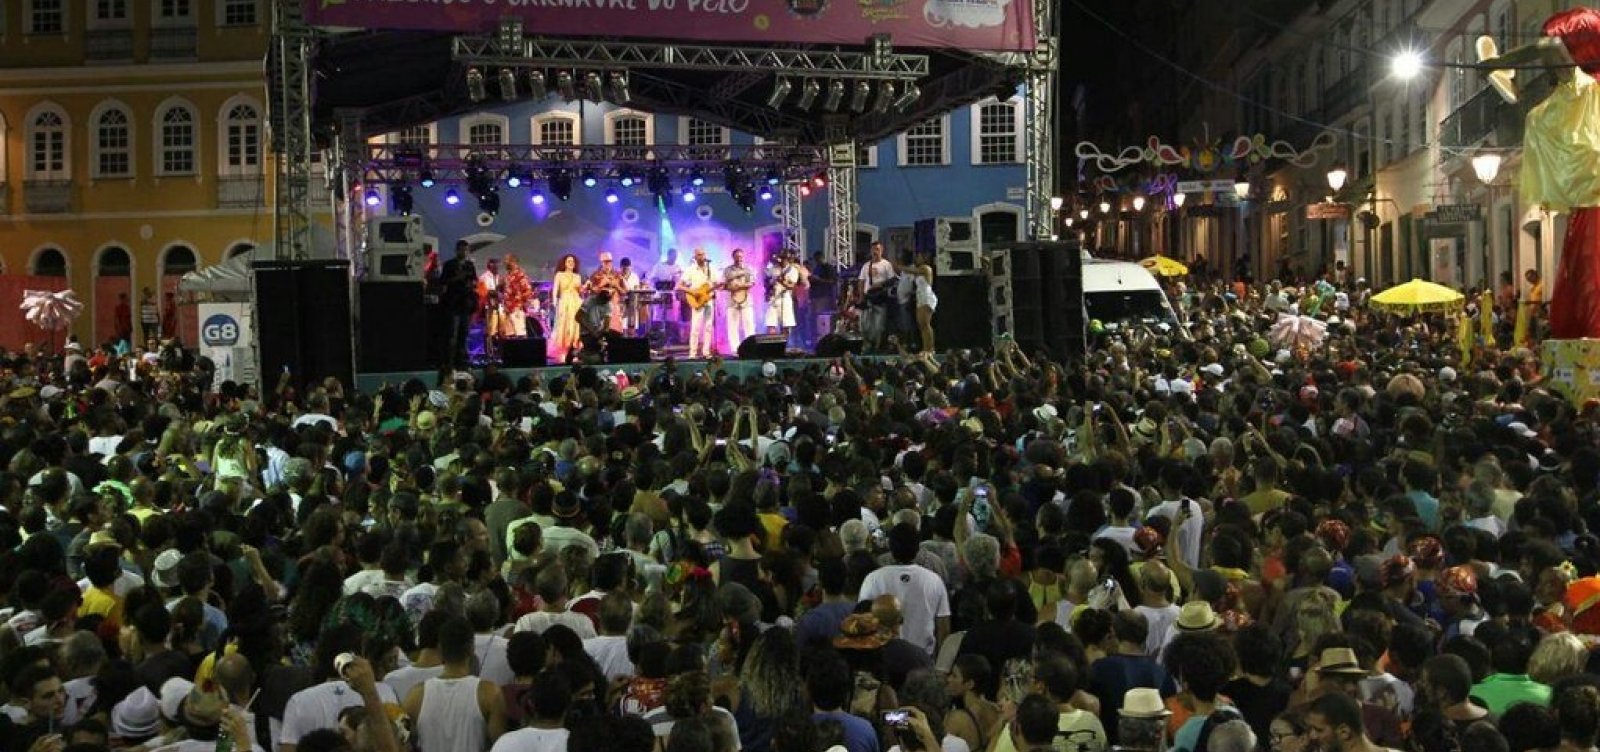 Carnaval: confira a programação de blocos e shows no Centro Histórico